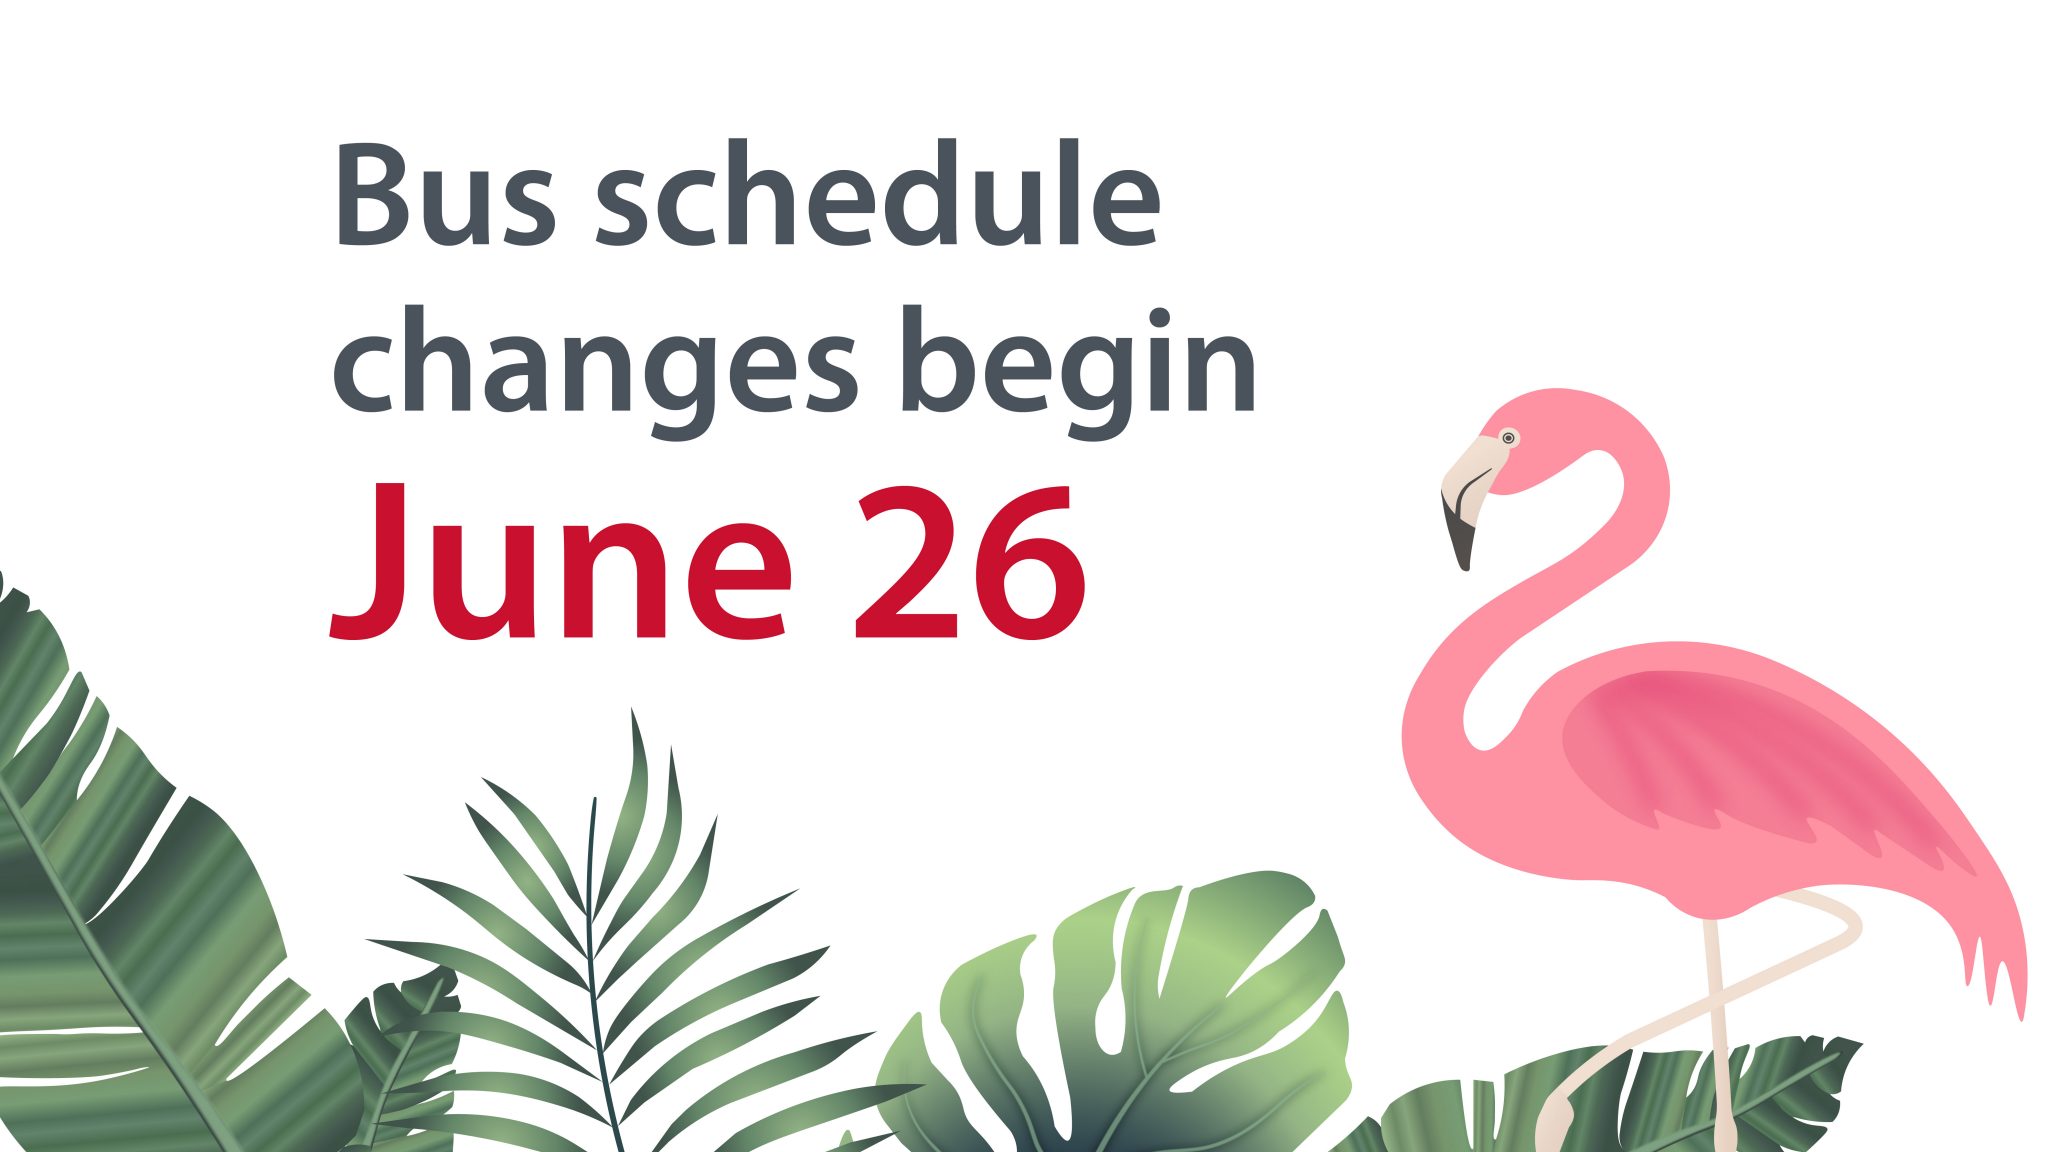 Bus schedule changes begin June 26